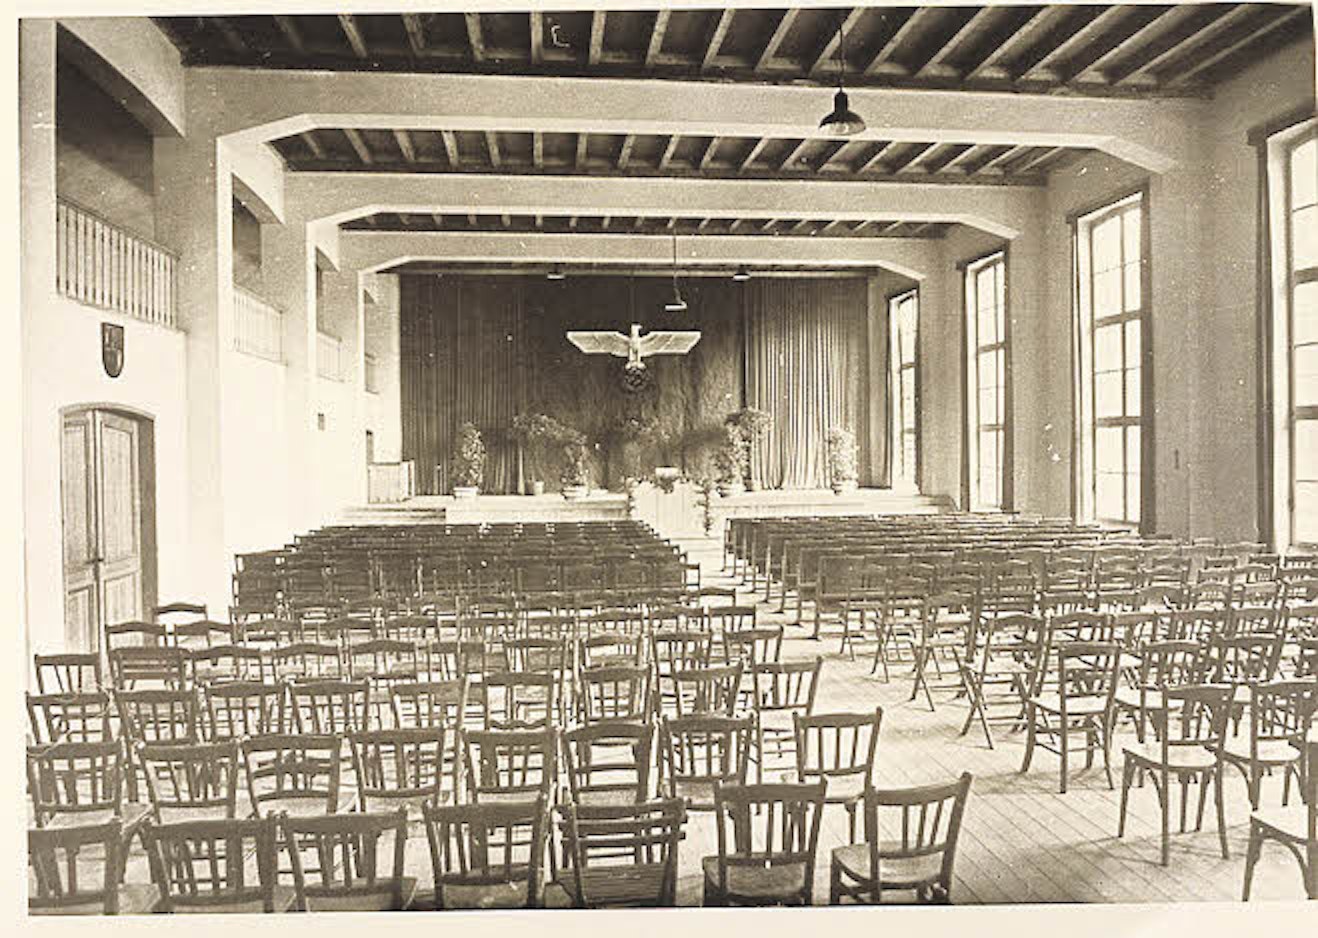 Der Reichsadler über der Bühne: Das heutige Theater war 1938 als Heim für die Hitlerjugend (HJ) gebaut worden.